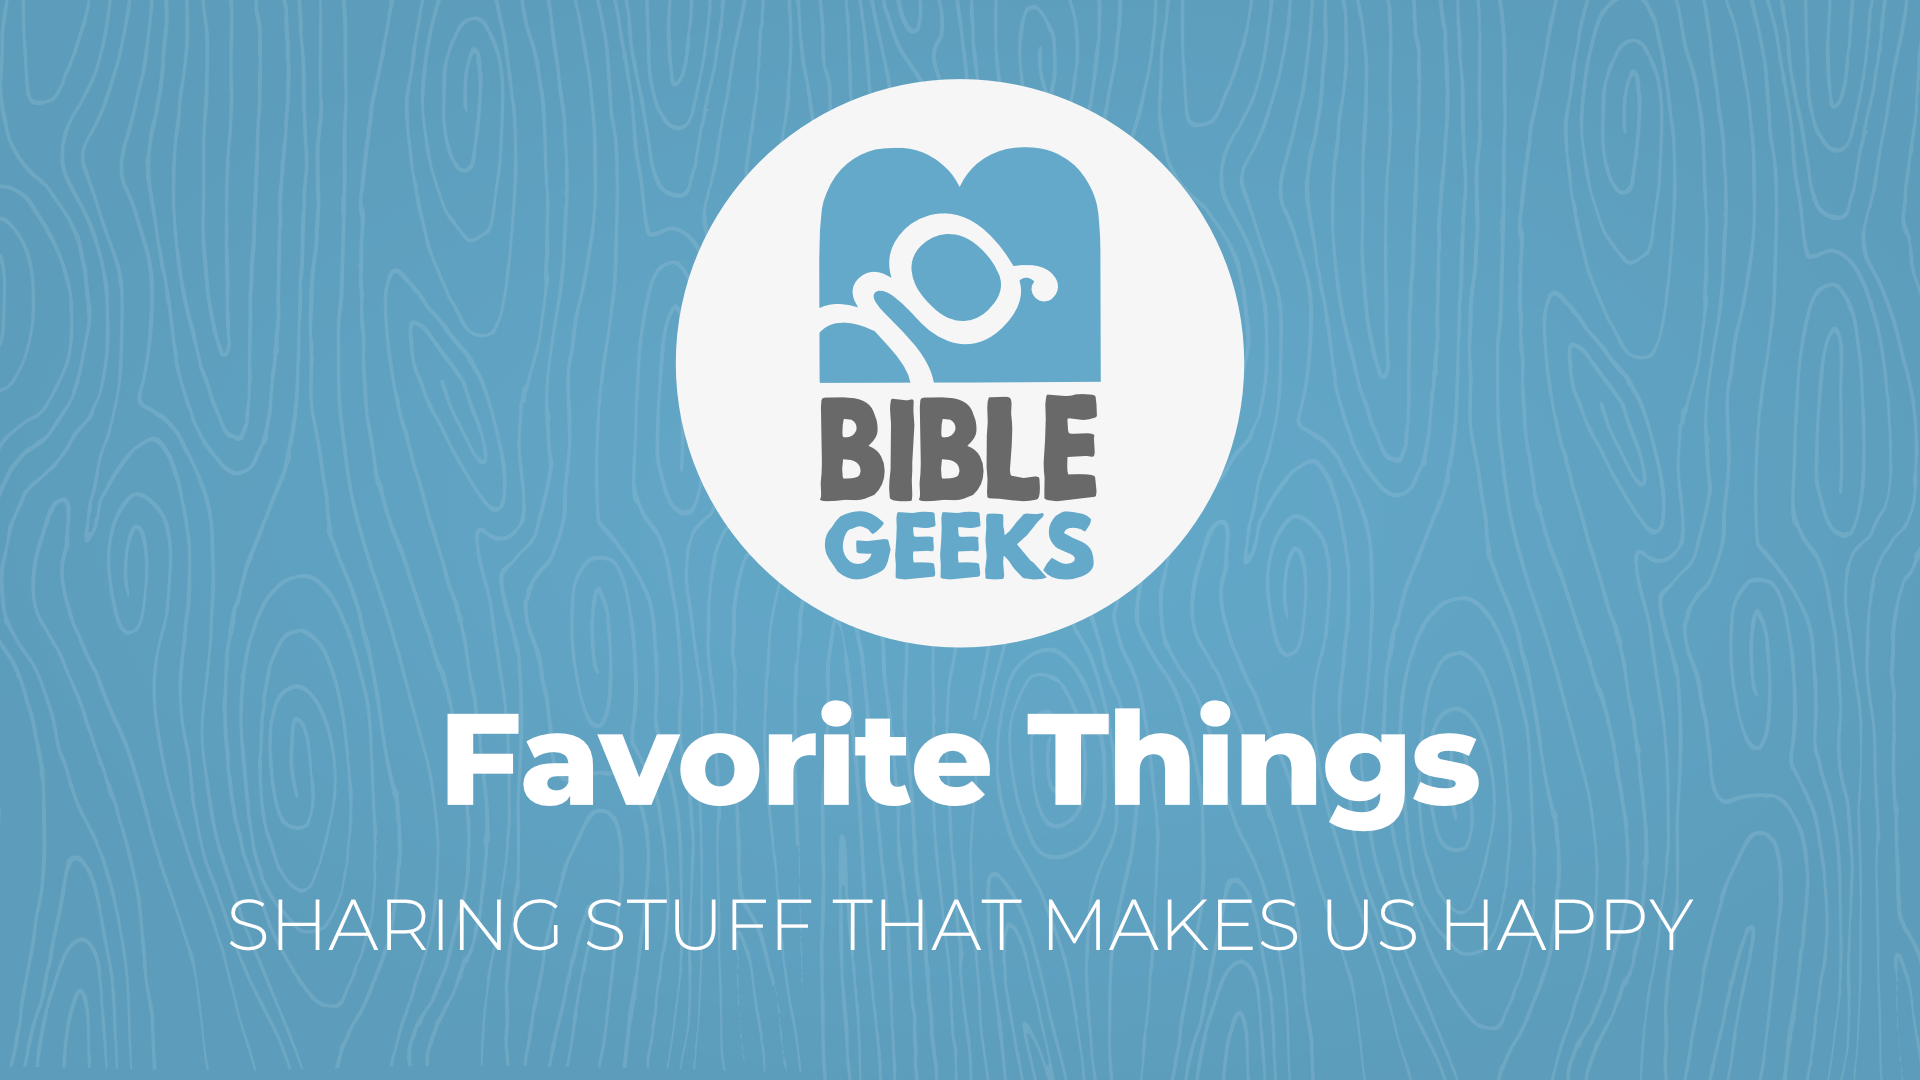 bibleGeeksSeriesPosterTemplate-FavoriteThings.png